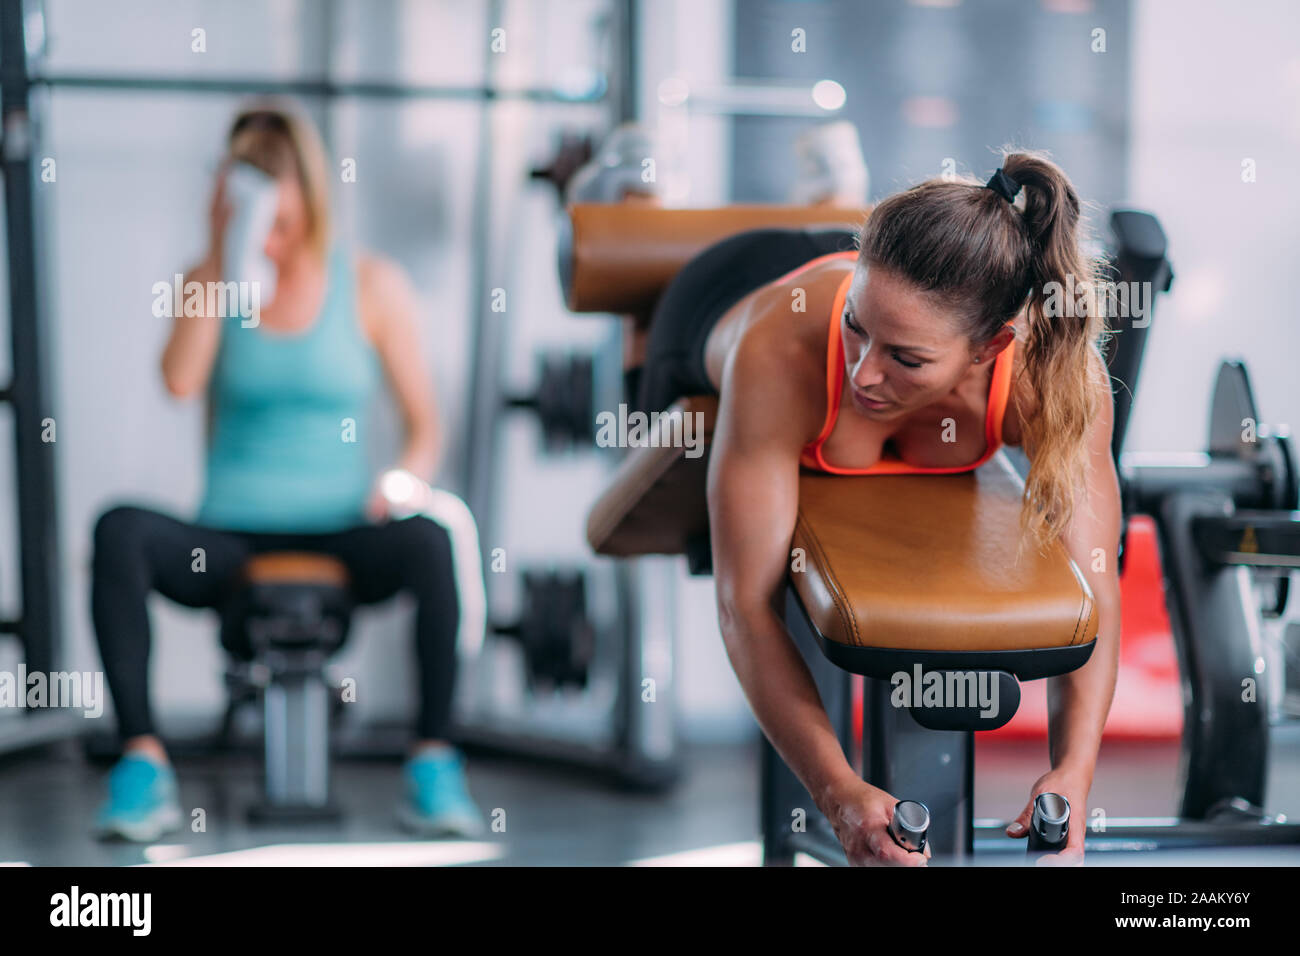 Weibliche Athleten trainieren gestrecktes Bein Sitzbank in der Turnhalle locken. Stockfoto